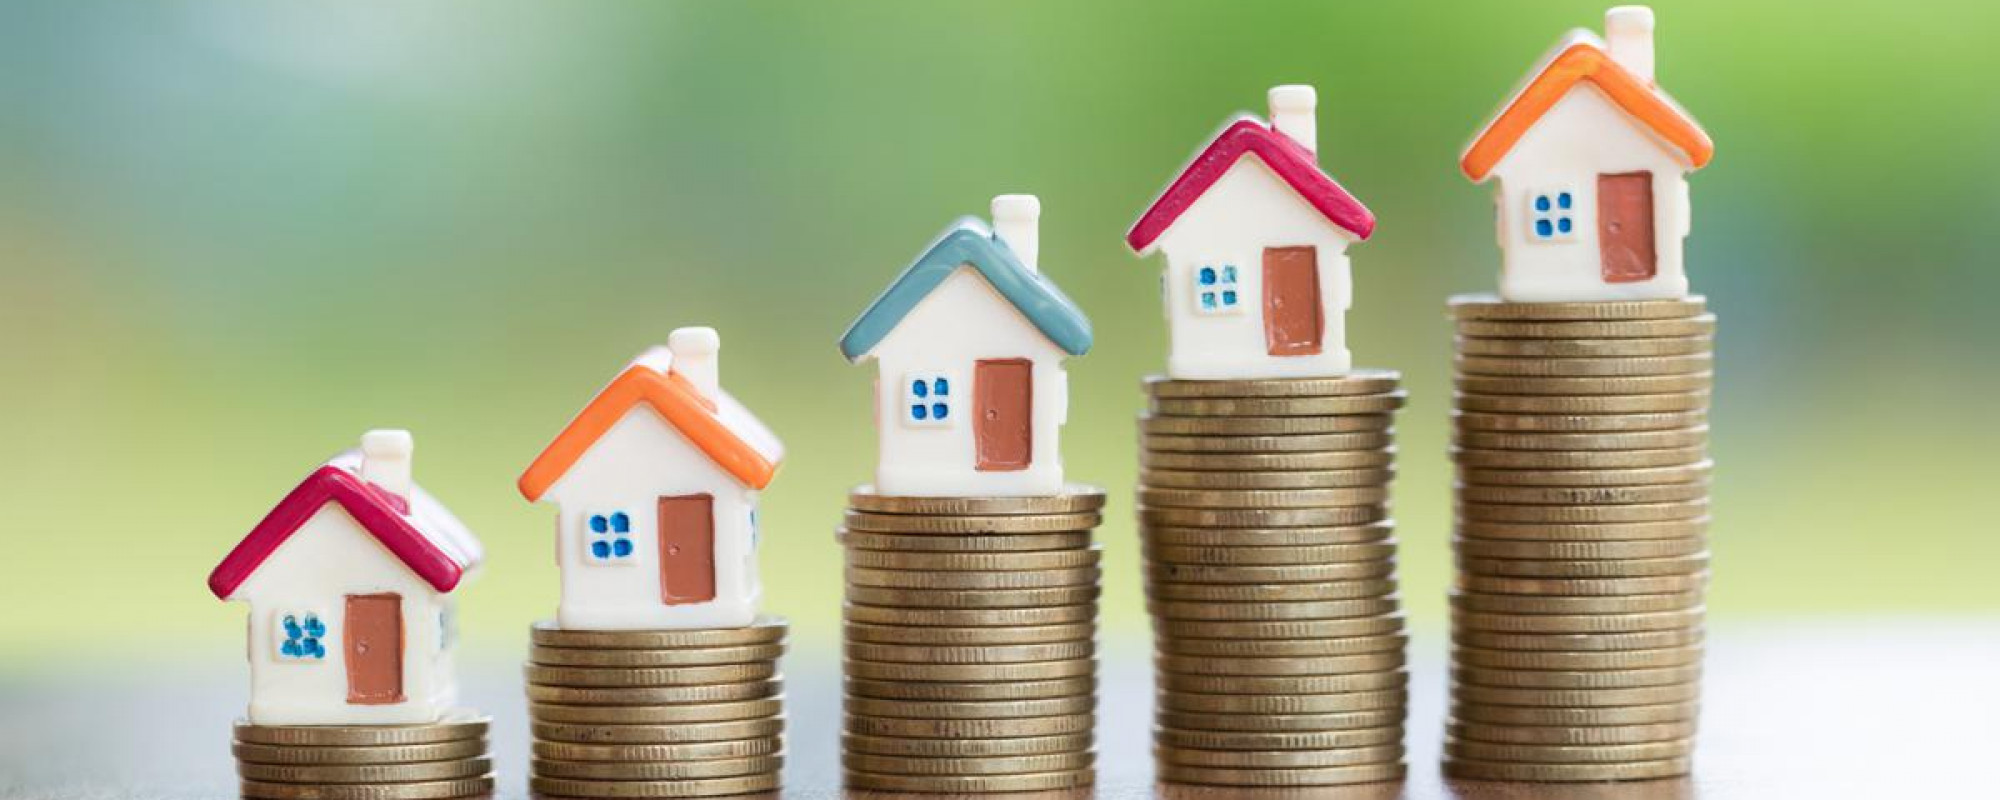 Hogere hypotheekrente, wat doet dat met de huizenmarkt?